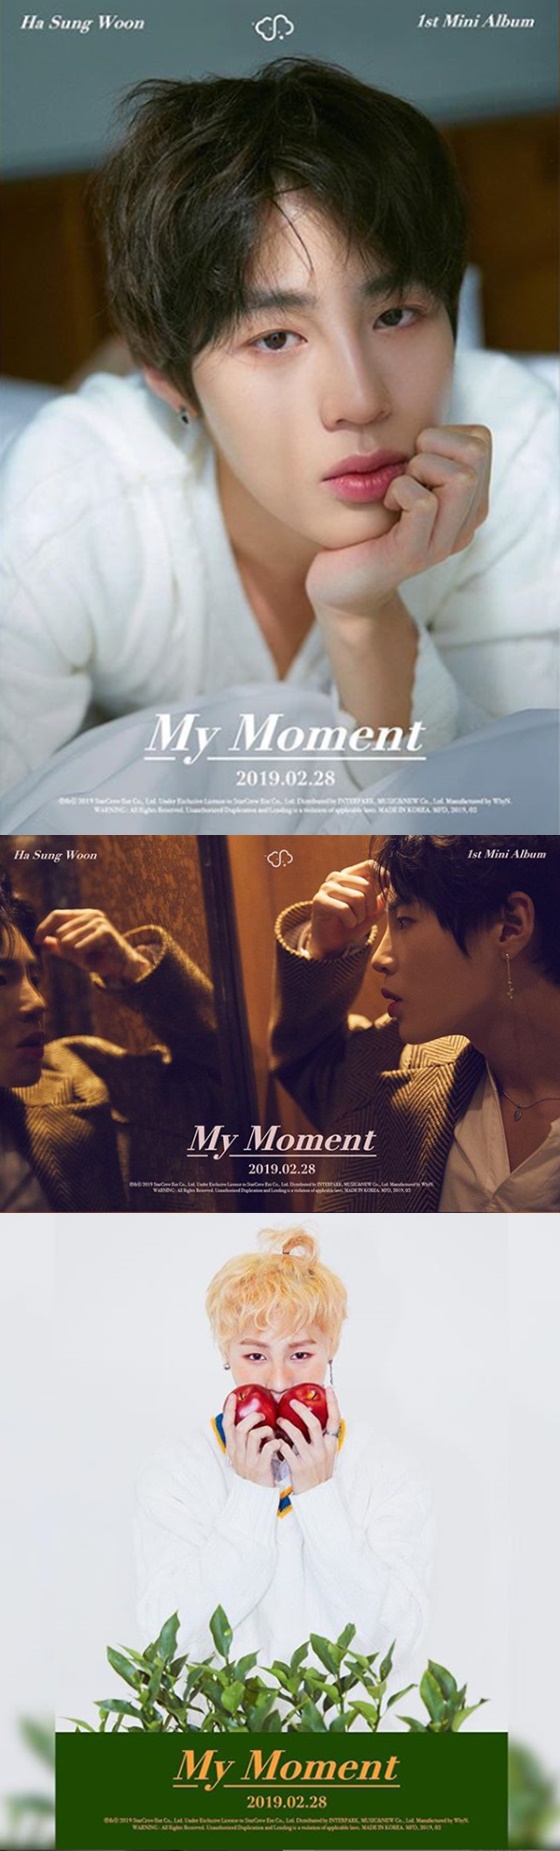 하성운, ‘My Moment’ 세 번째 티저 사진 공개..”티저 아닌 영화네”